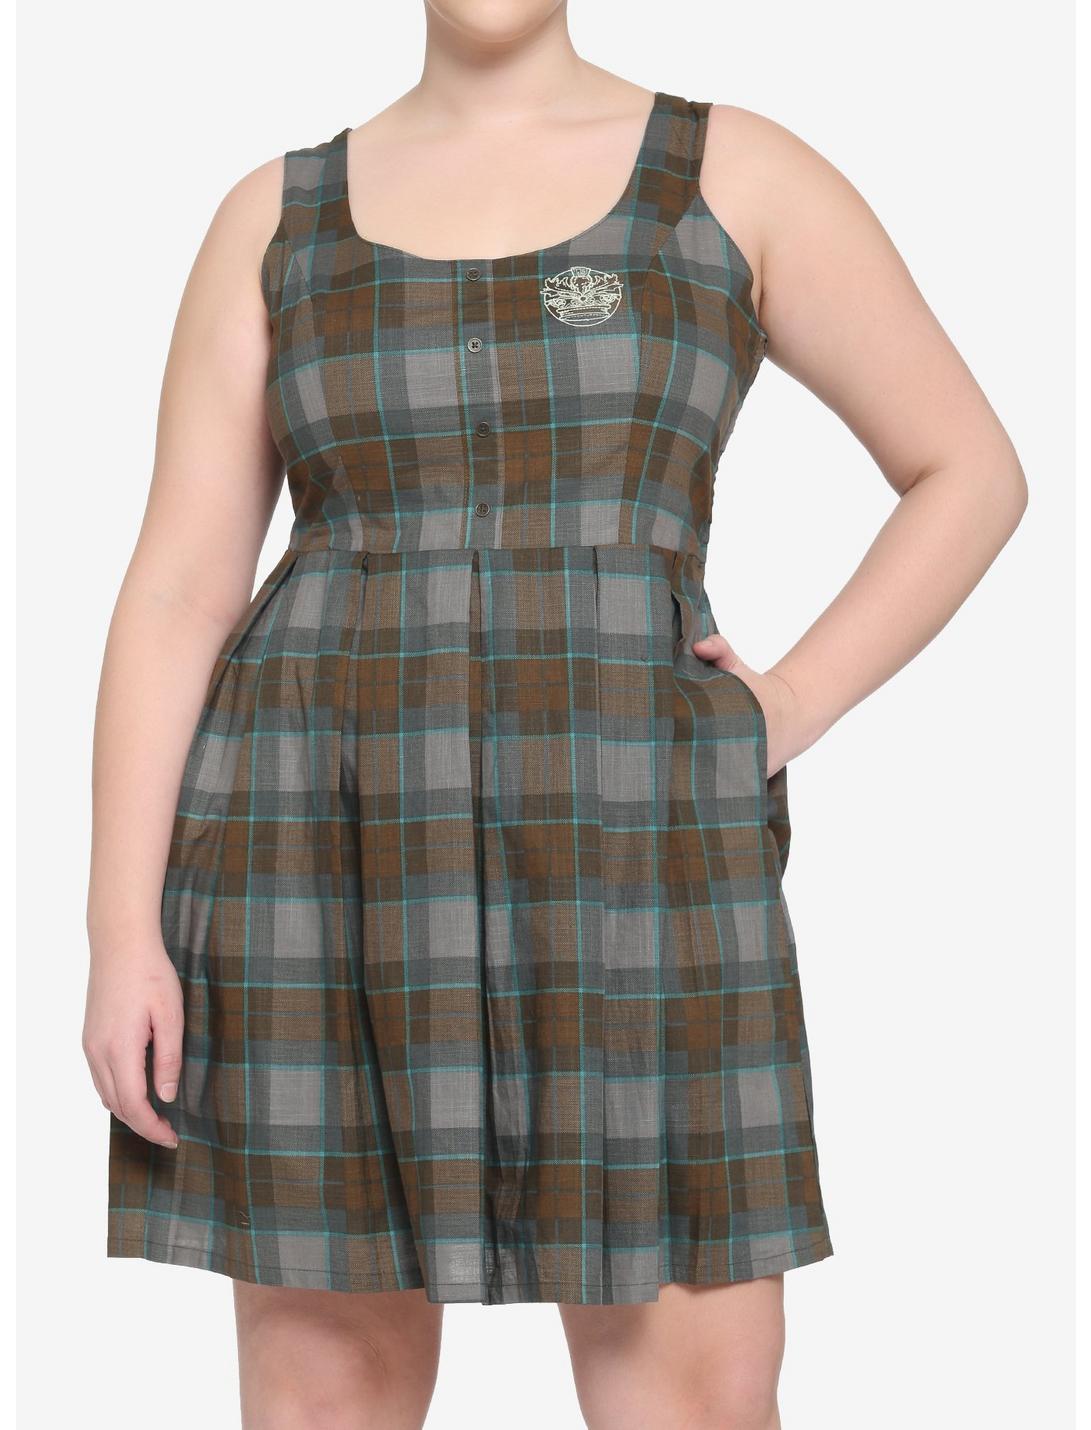 Outlander Lace-Up Tartan Plaid Dress Plus Size, MULTI, hi-res